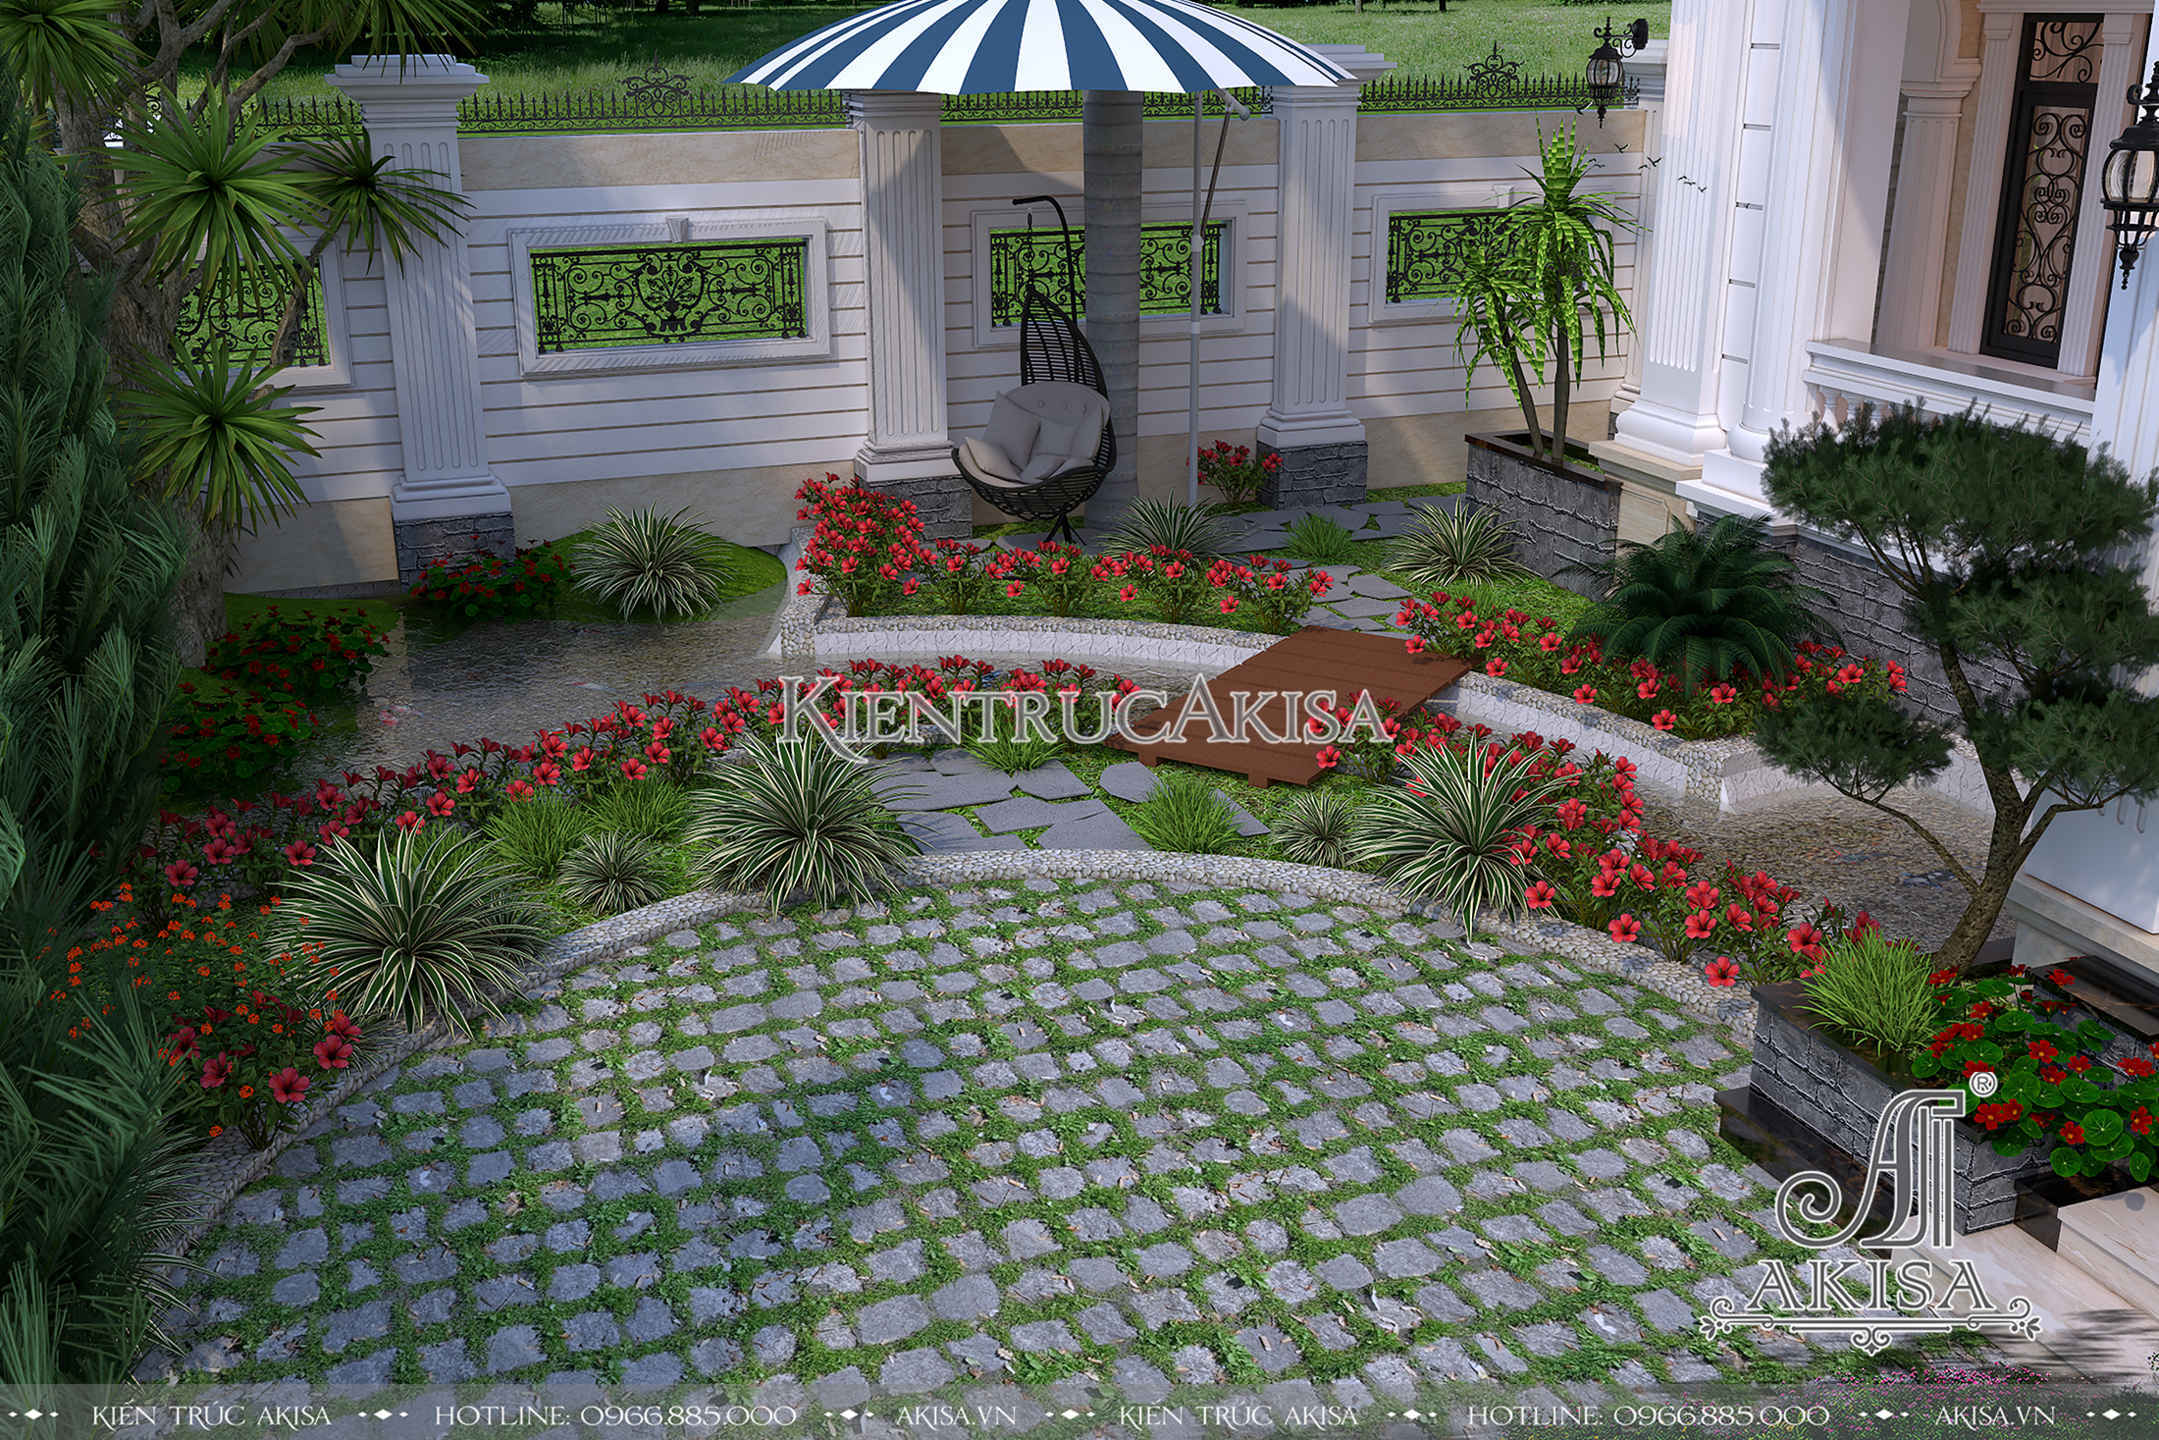  Hình ảnh thiết kế sân vườn của biệt thự ở Hà Nội